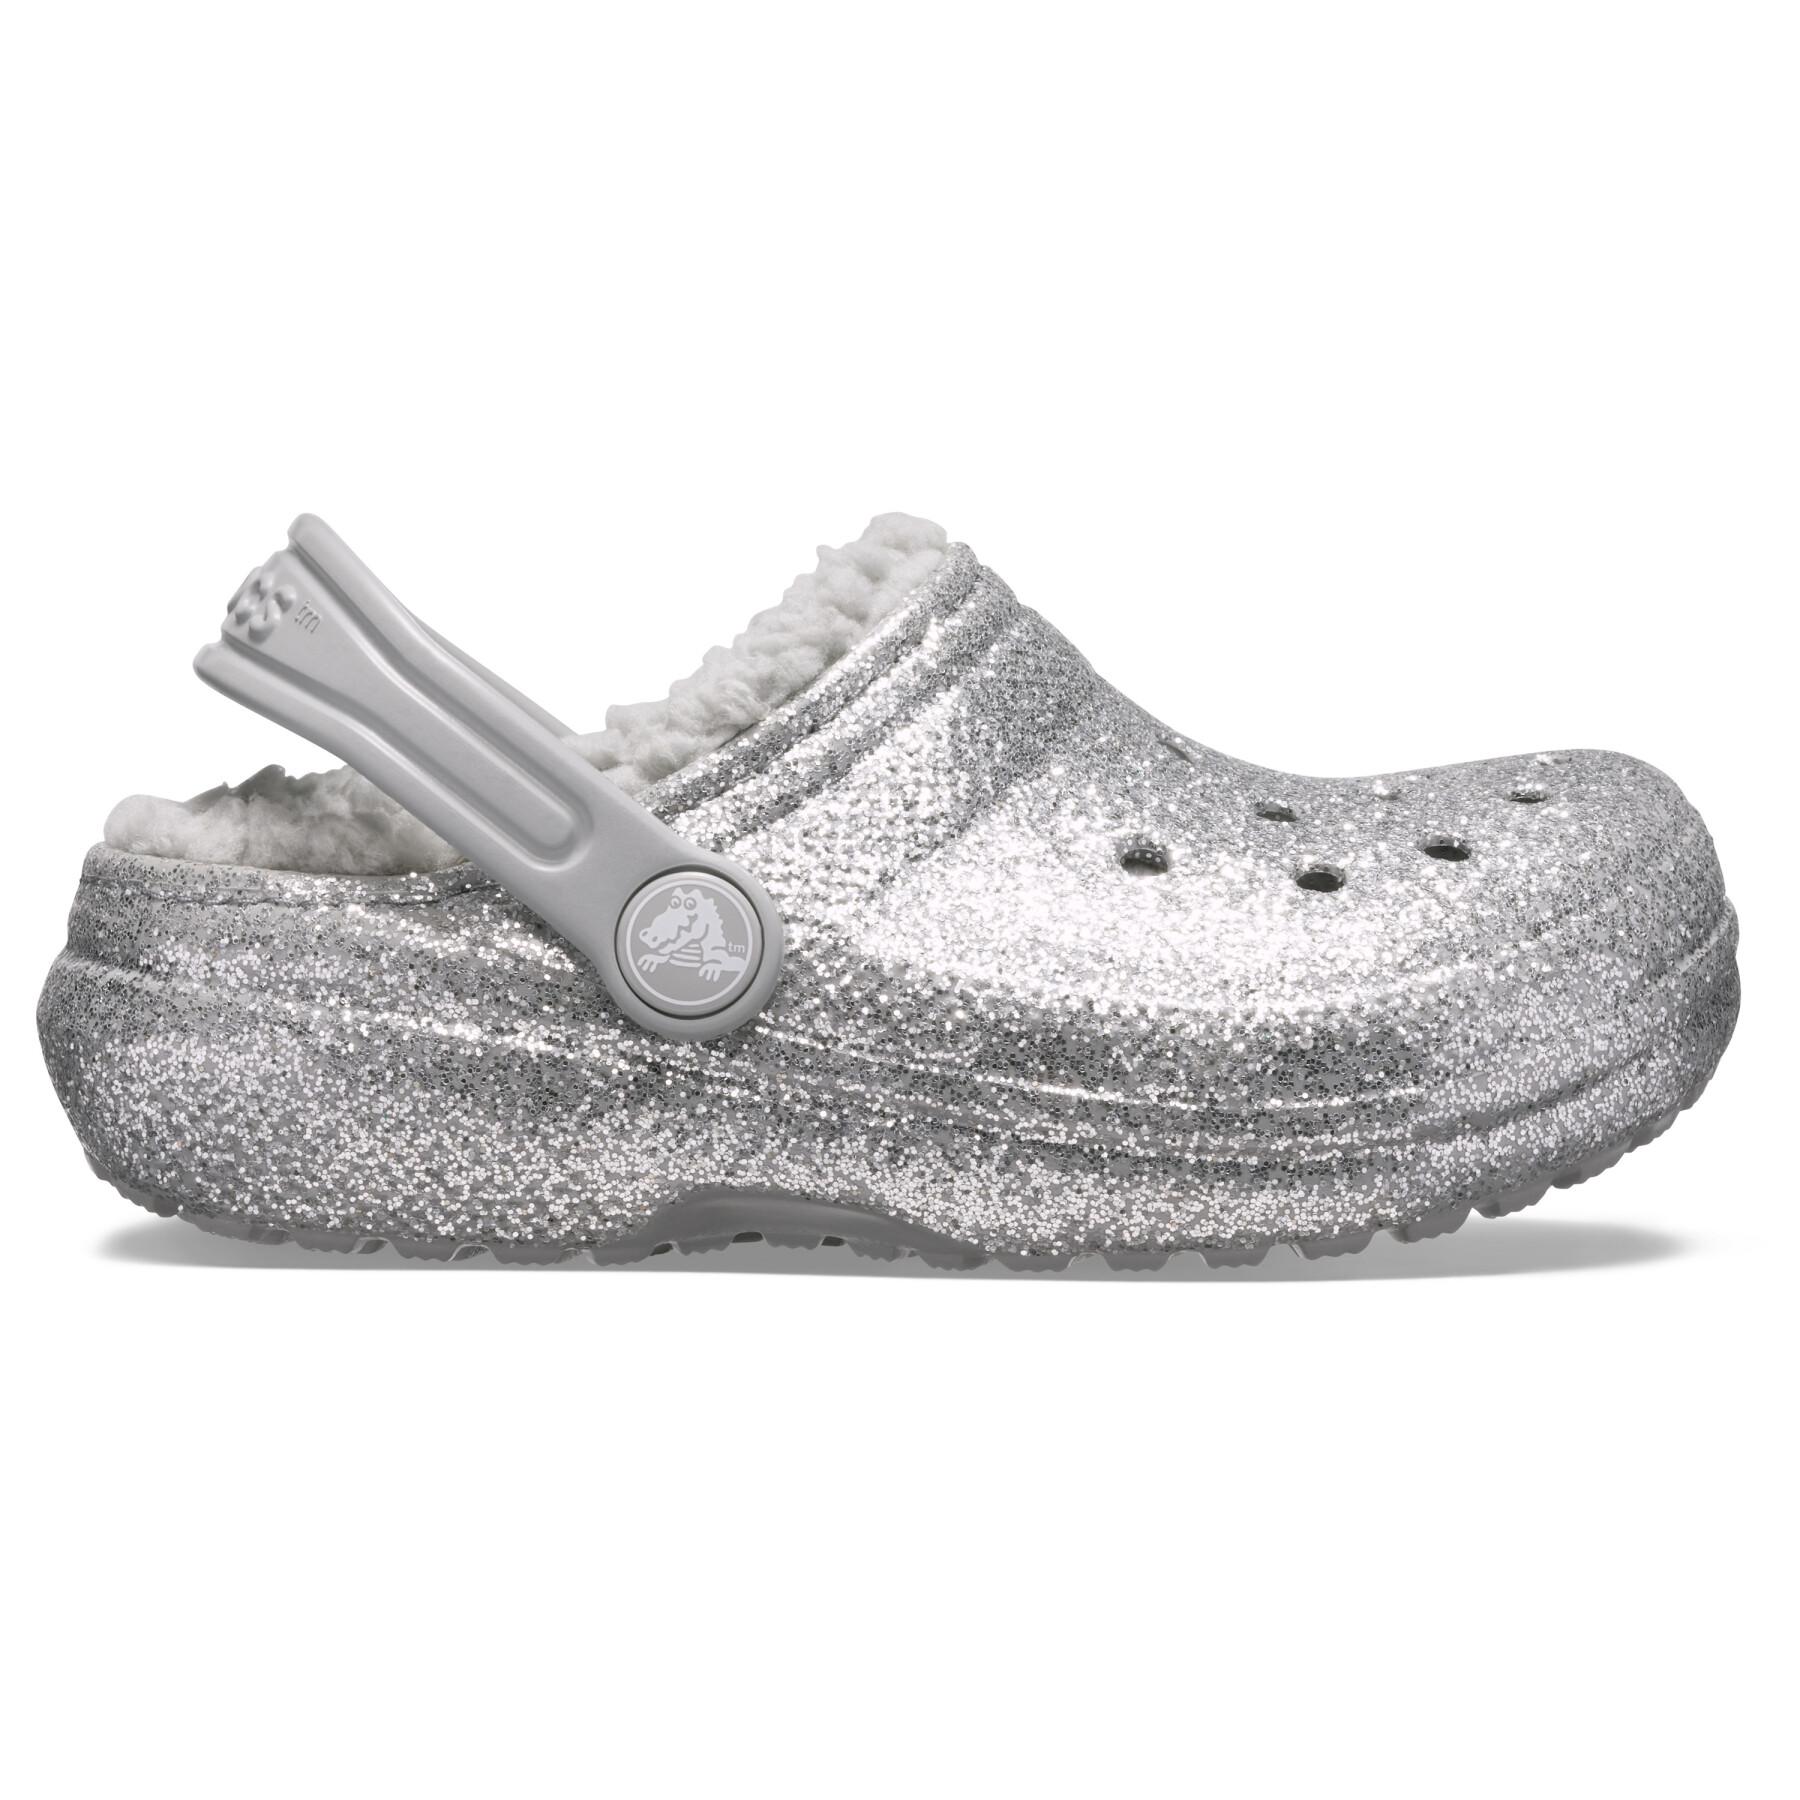 Crocs enfant classic glitter lined clog